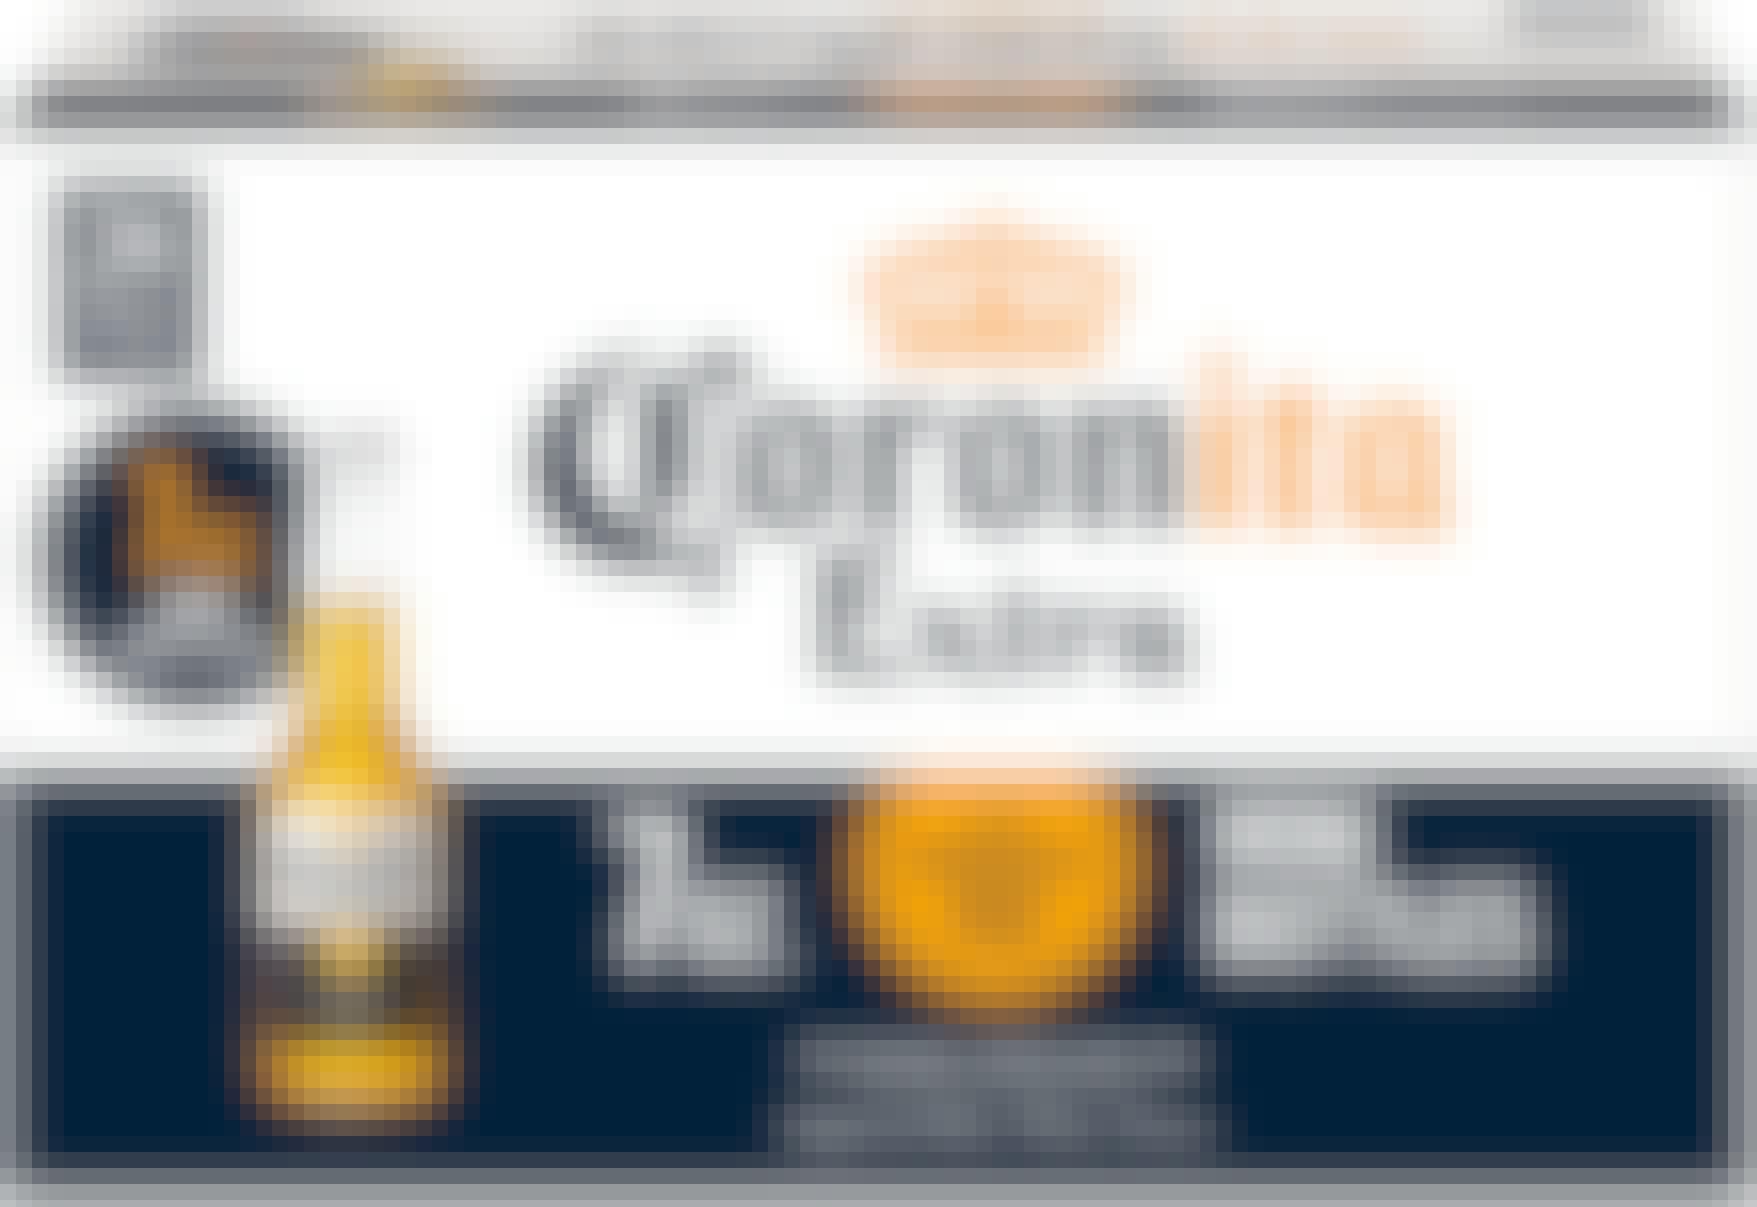 Corona Coronita Extra 24 pack 7 oz. Bottle